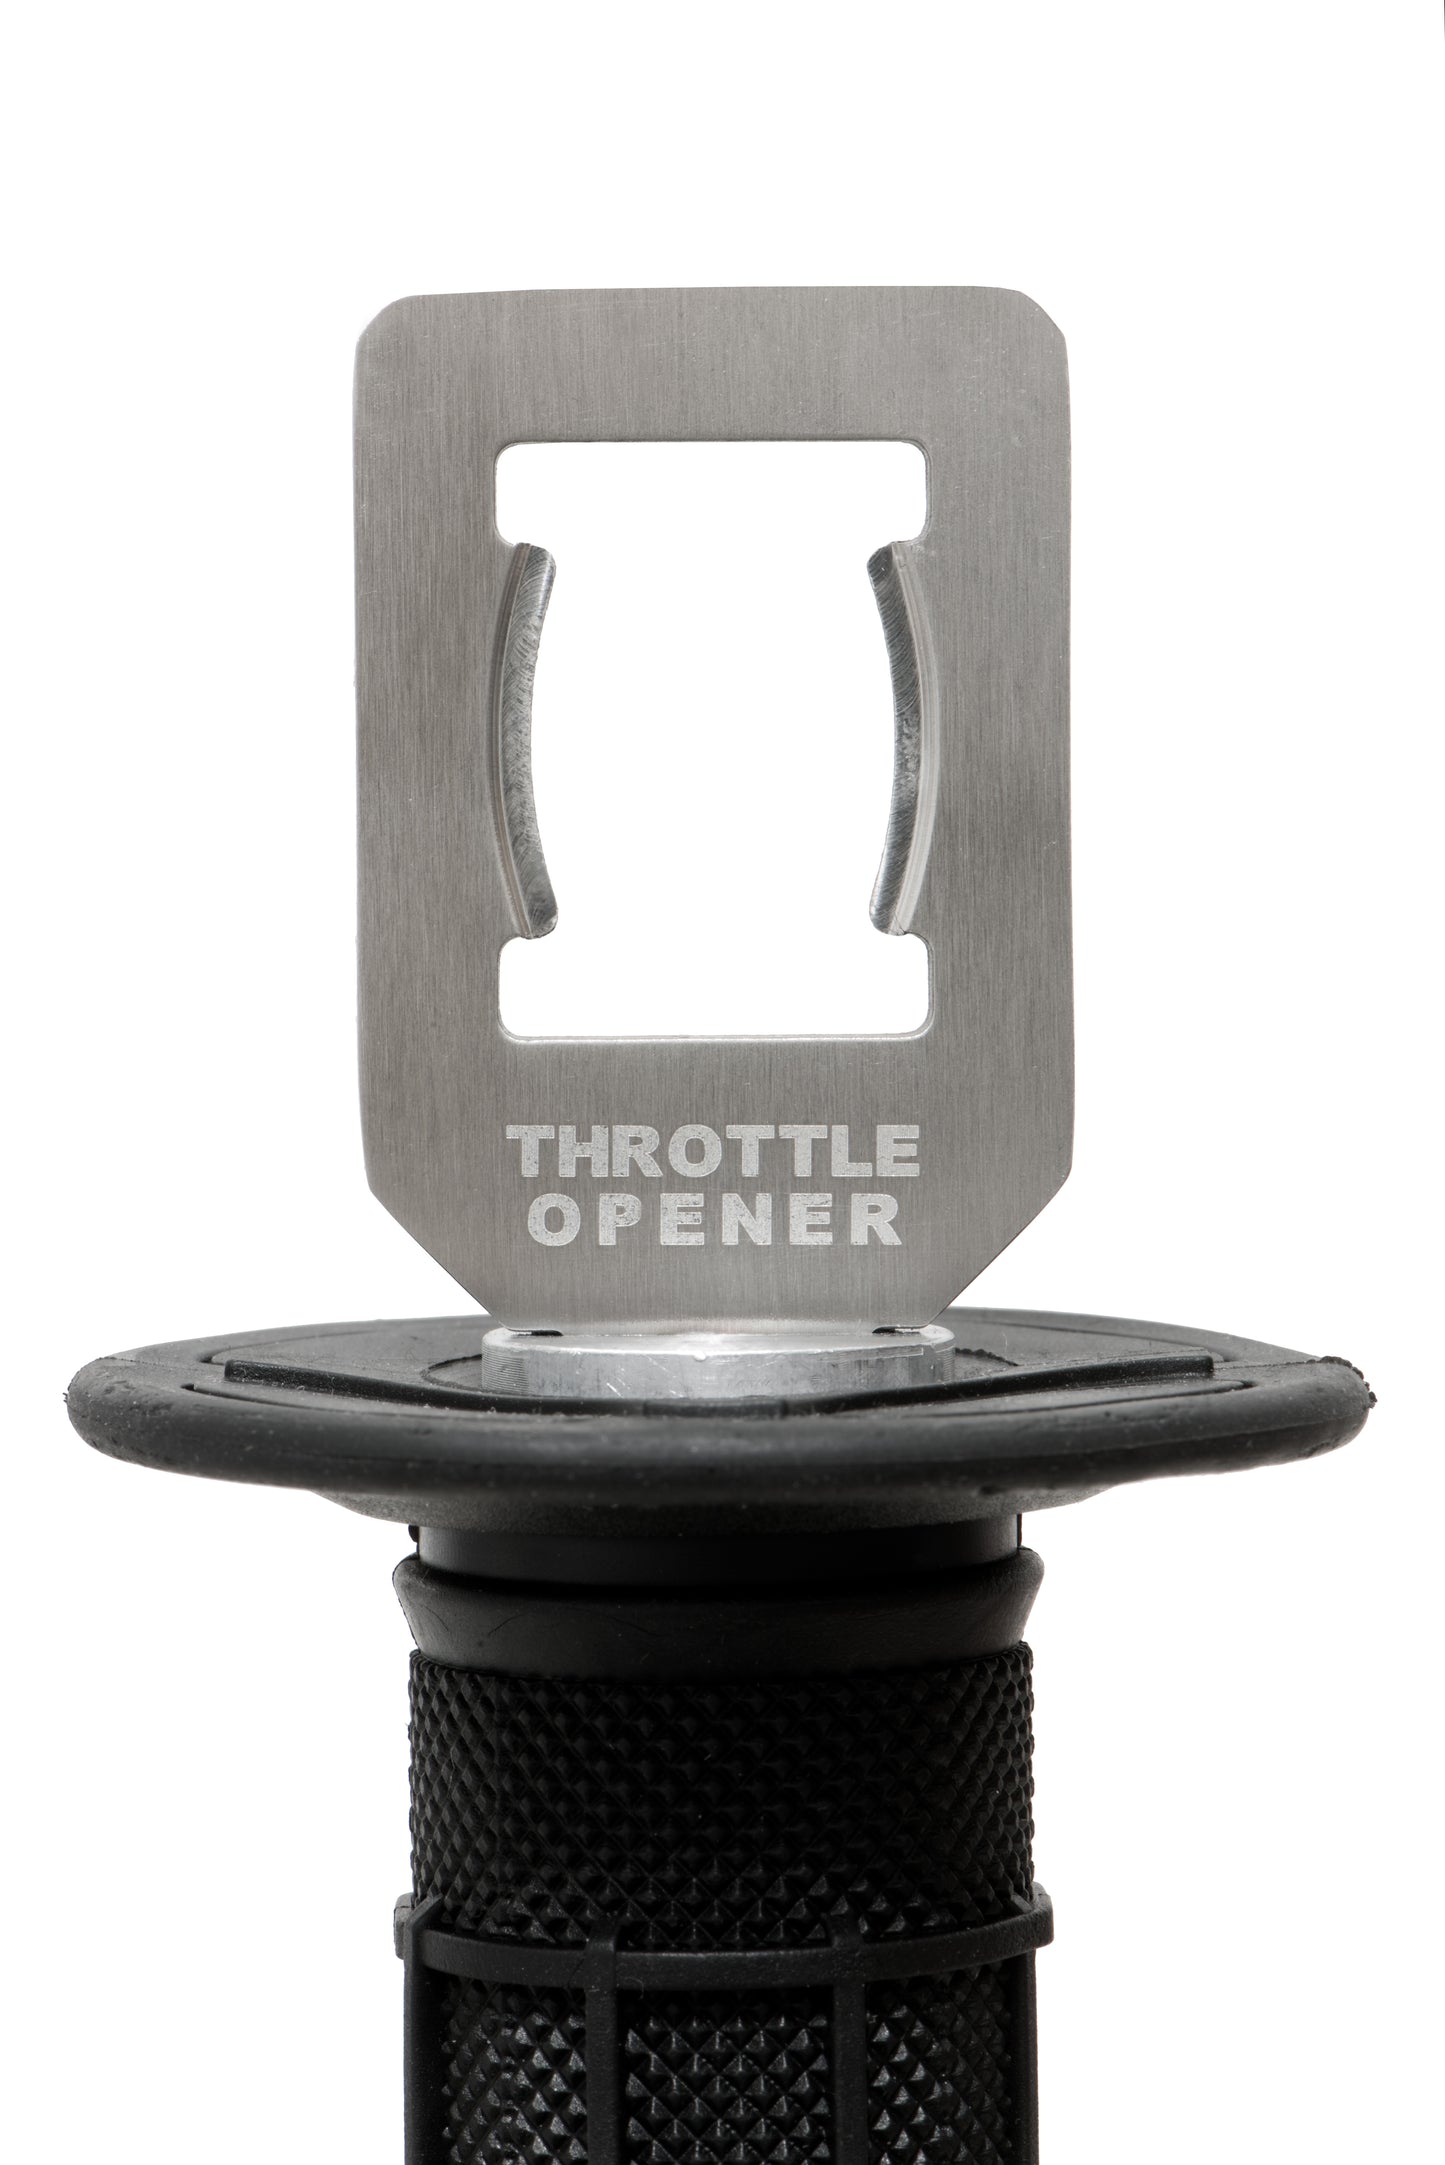 The Original Throttle Opener